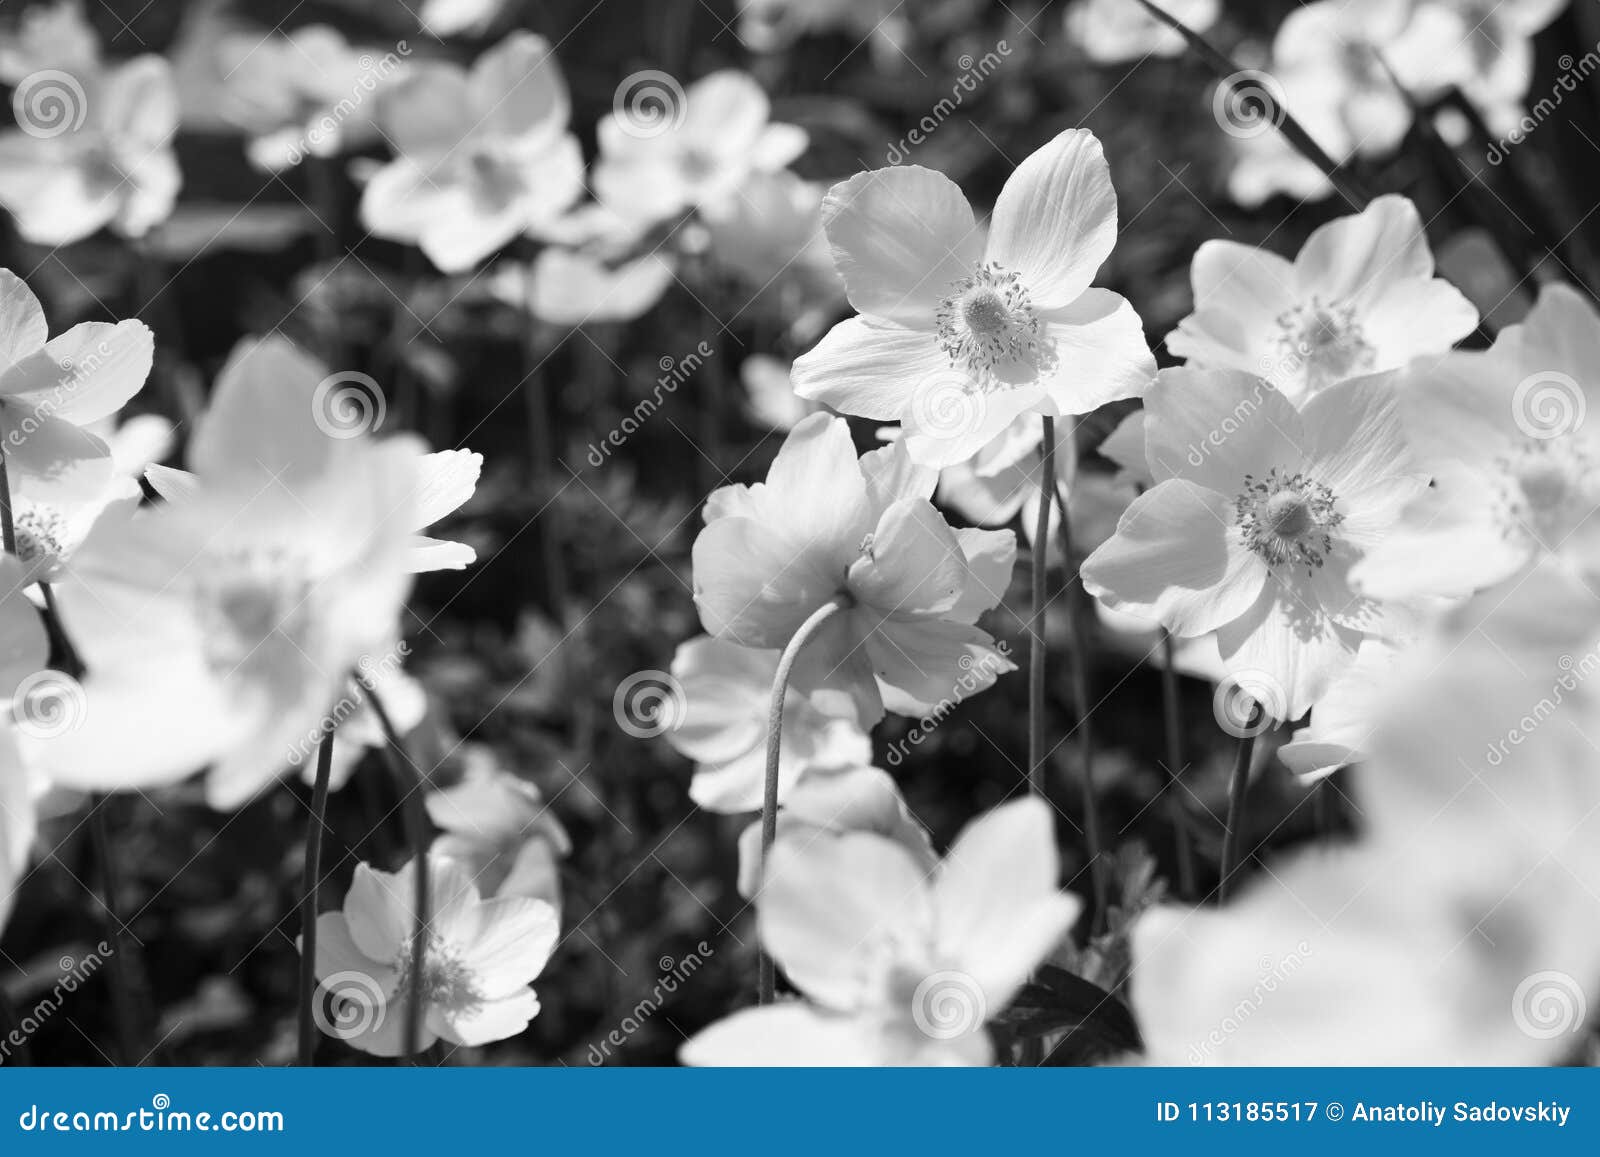 Fiori In Bianco E Nero Dell Anemone Immagine Stock Immagine Di Fiore Aperto 113185517